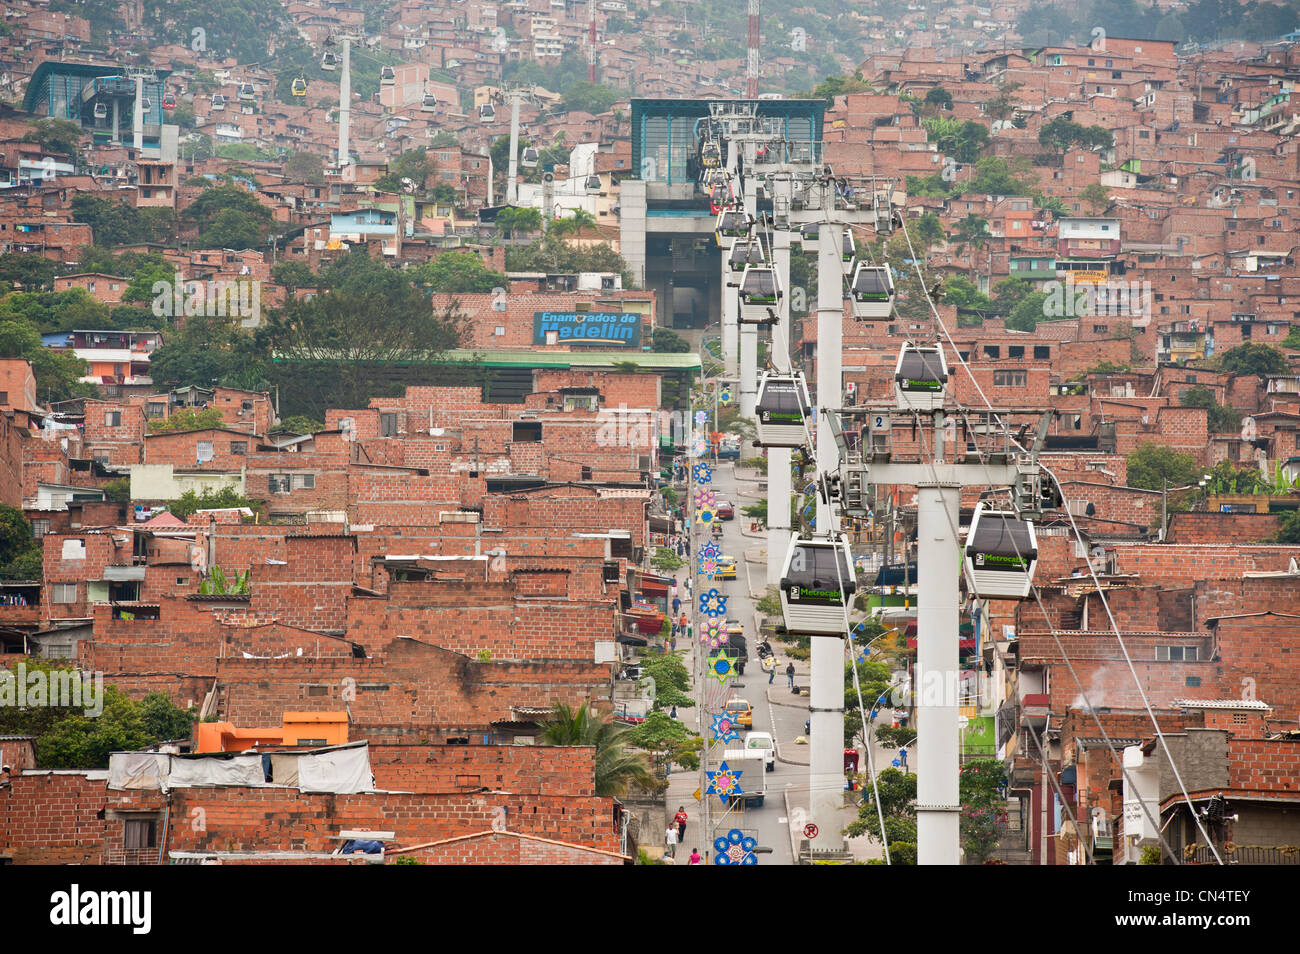 El barro de Medellín | BAJO EL ALA ALEVE